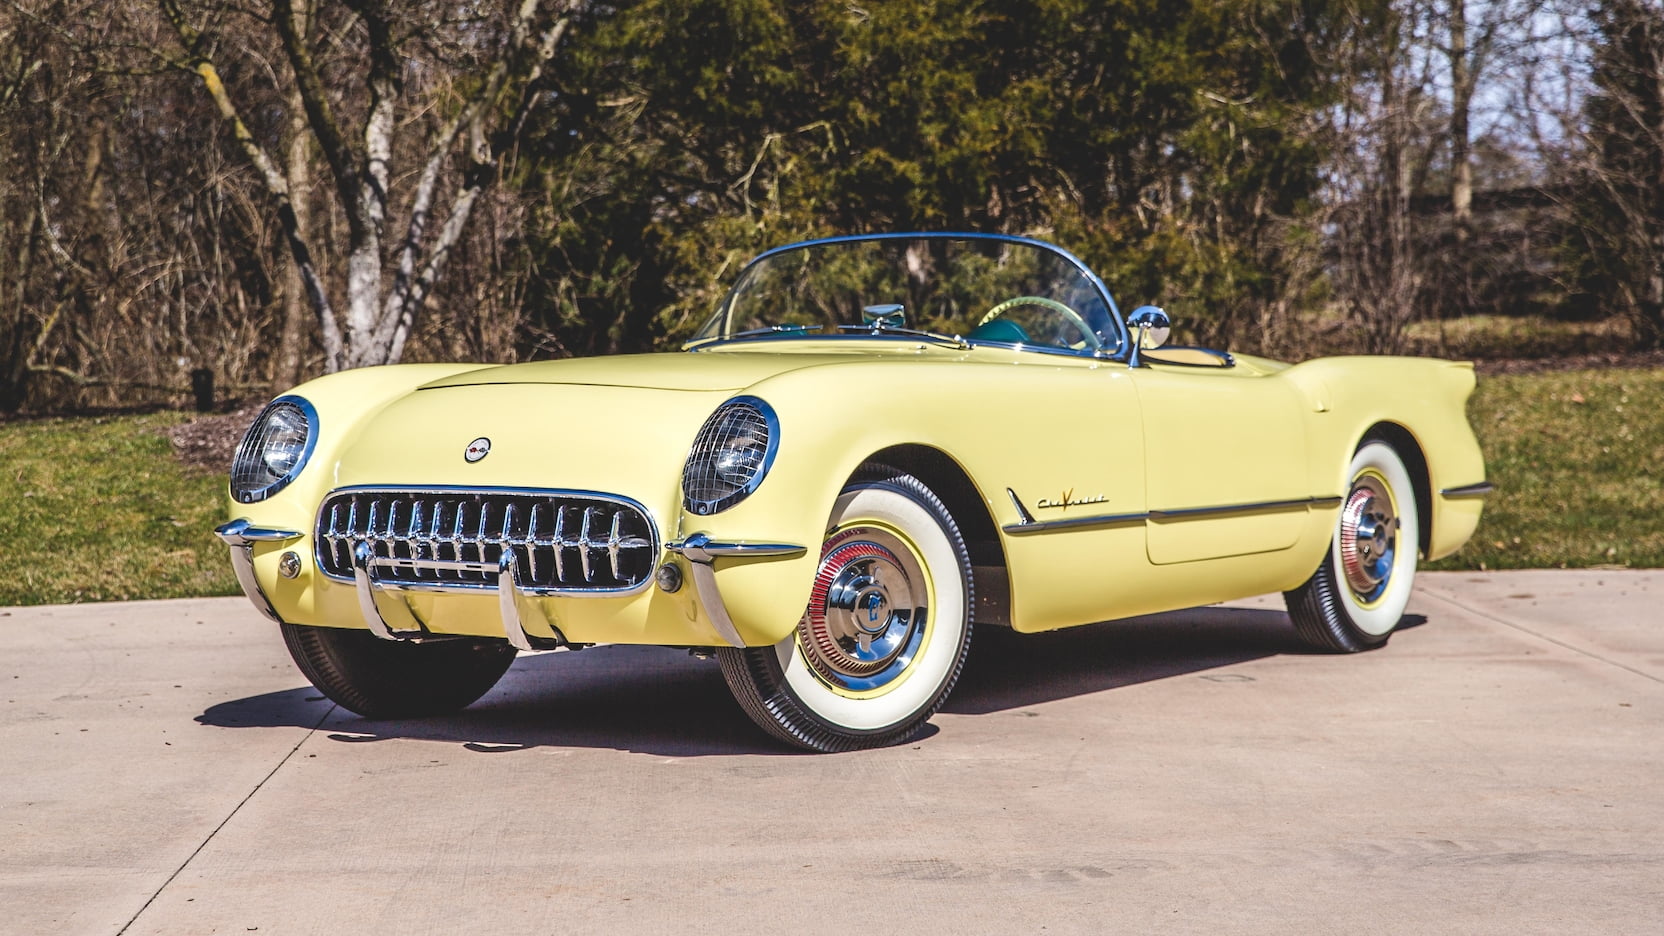 The 1955 Corvette in Harvest Gold.